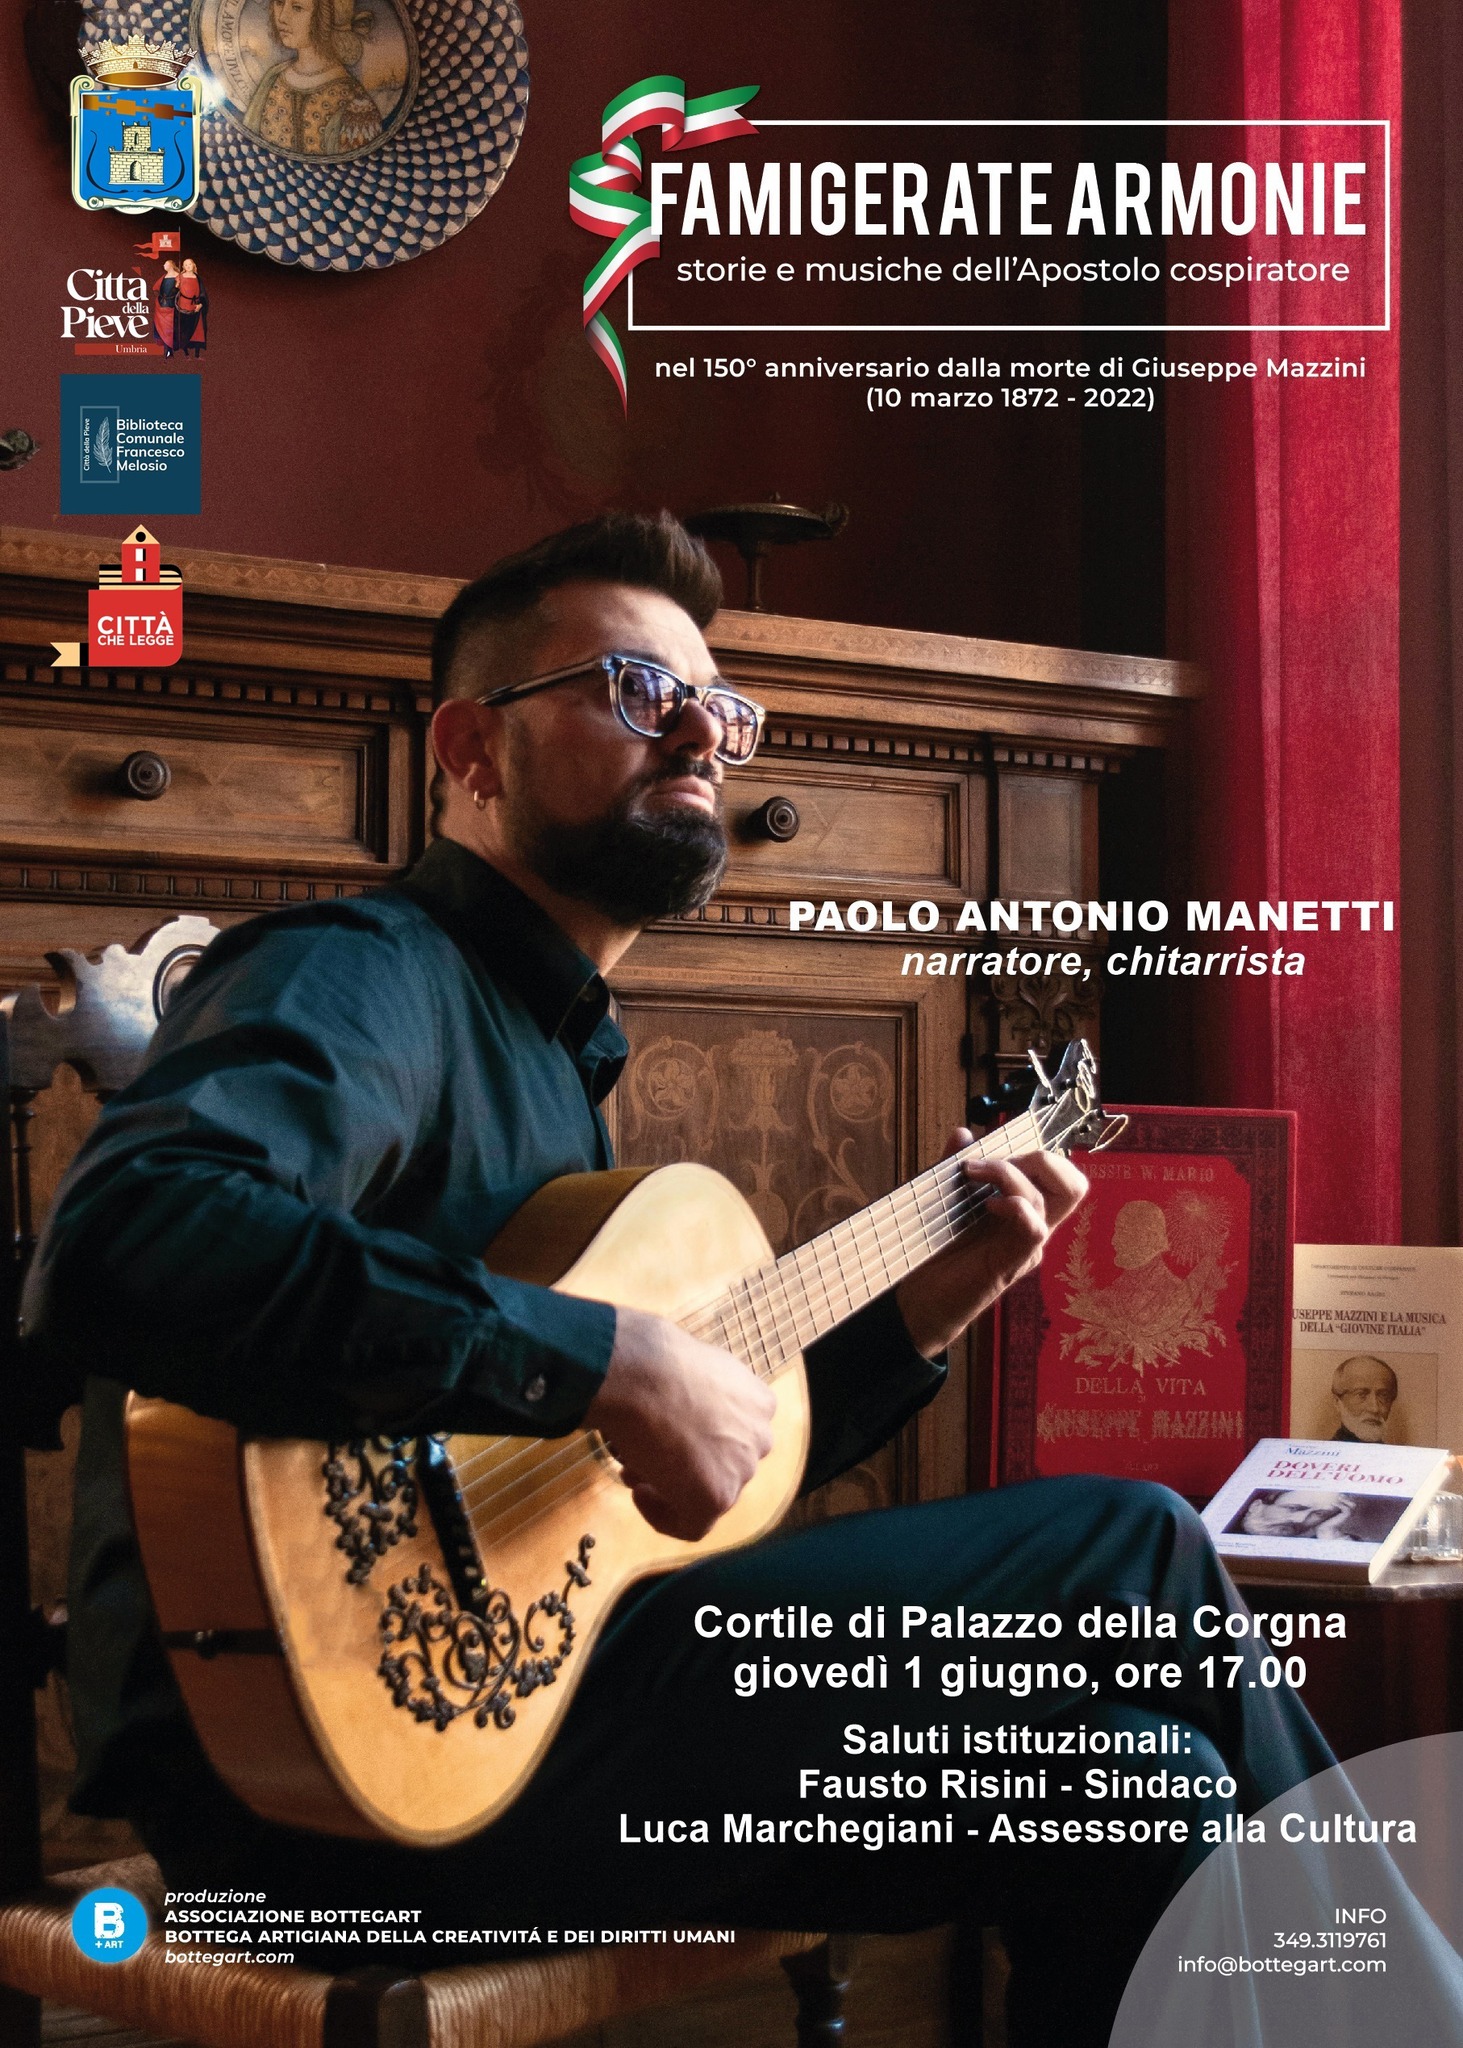 Città della Pieve – “Incontri in Biblioteca”, arriva il narratore Paolo Antonio Manetti con “Famigerate armonie”